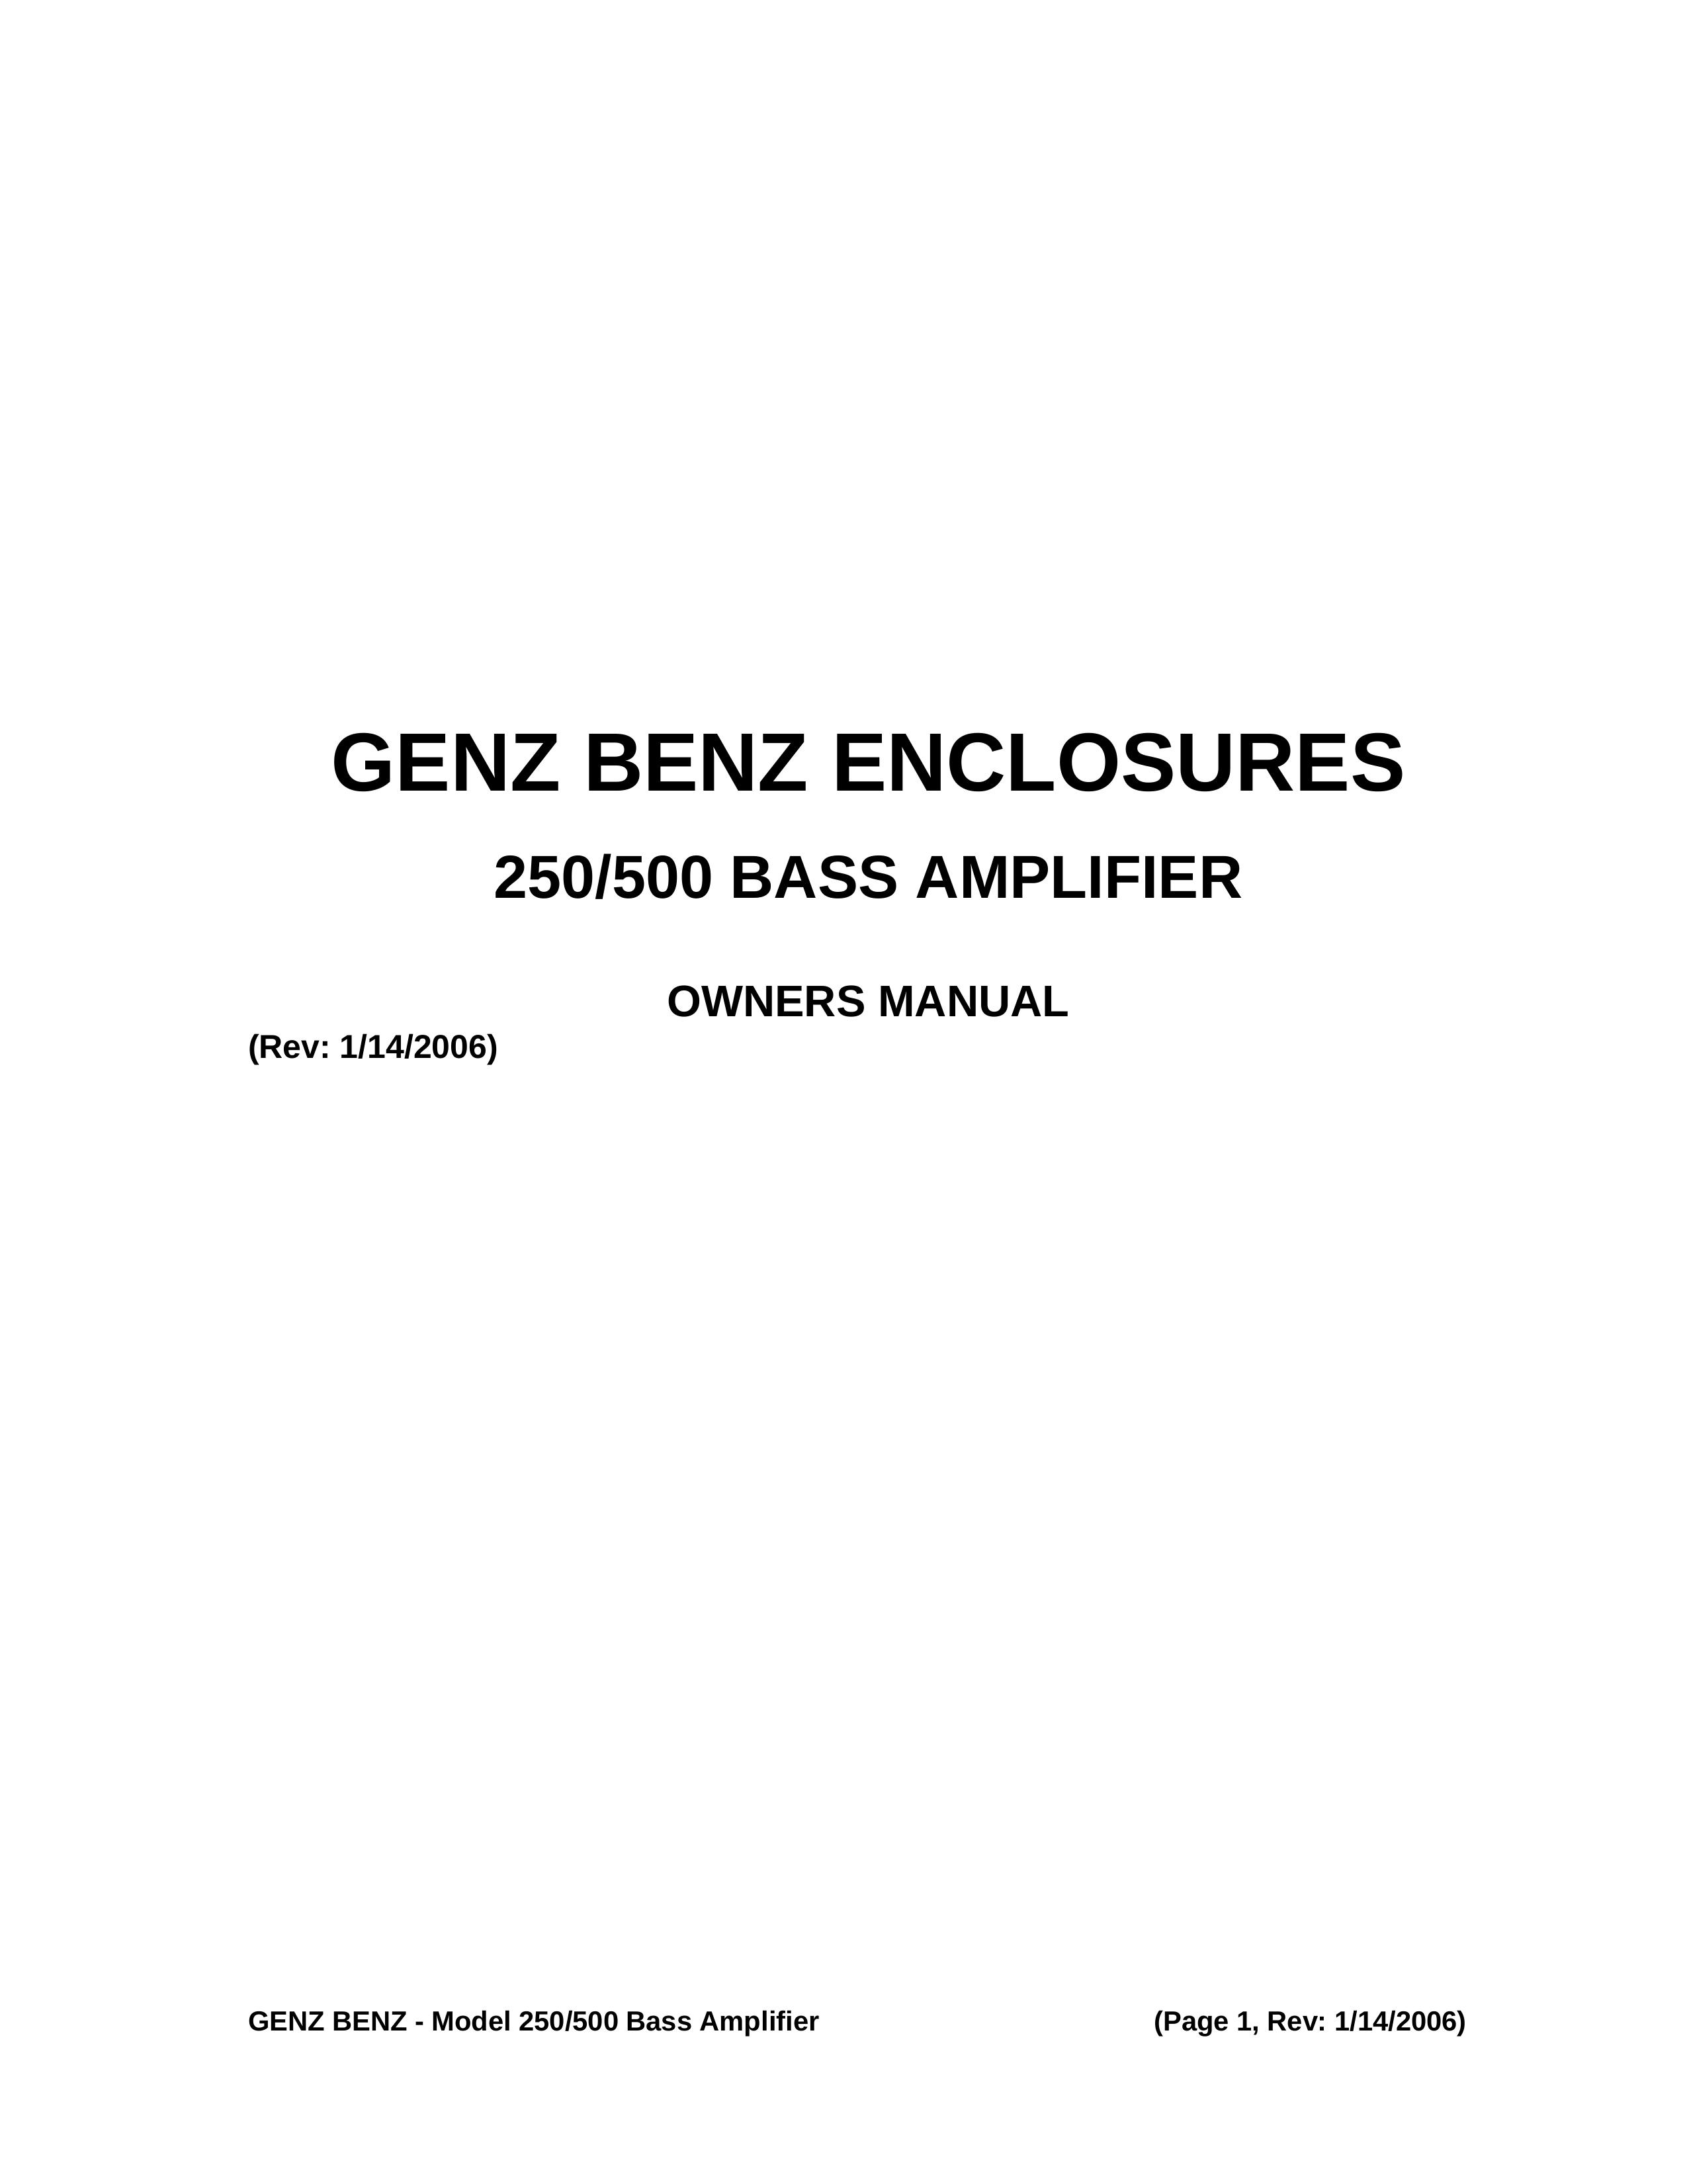 Genz-Benz 250 Musical Instrument Amplifier User Manual